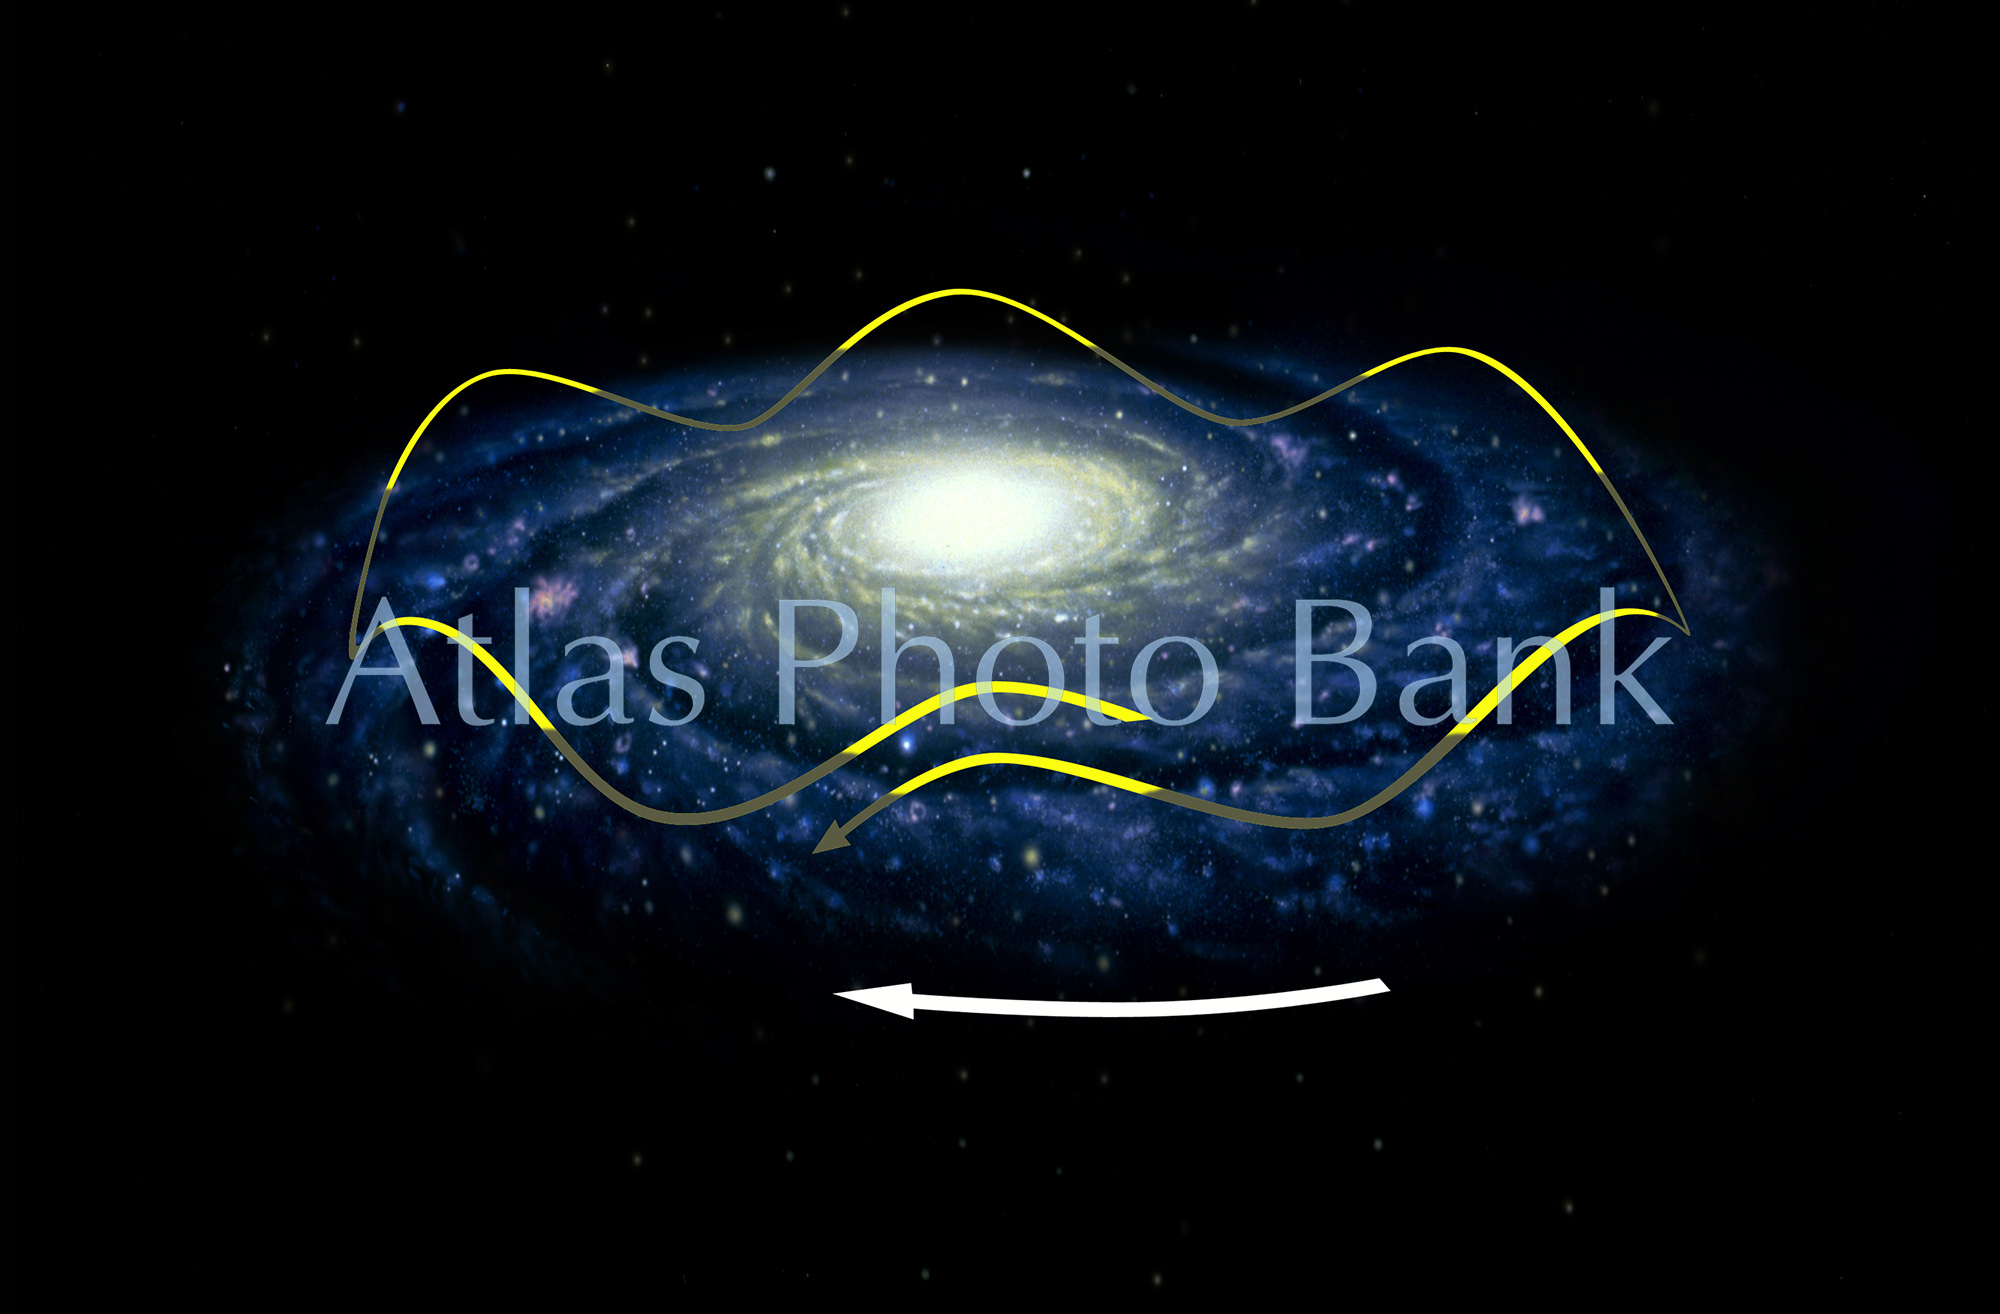 SS-200-銀河系中心の周囲を公転する太陽系-太陽系の動き